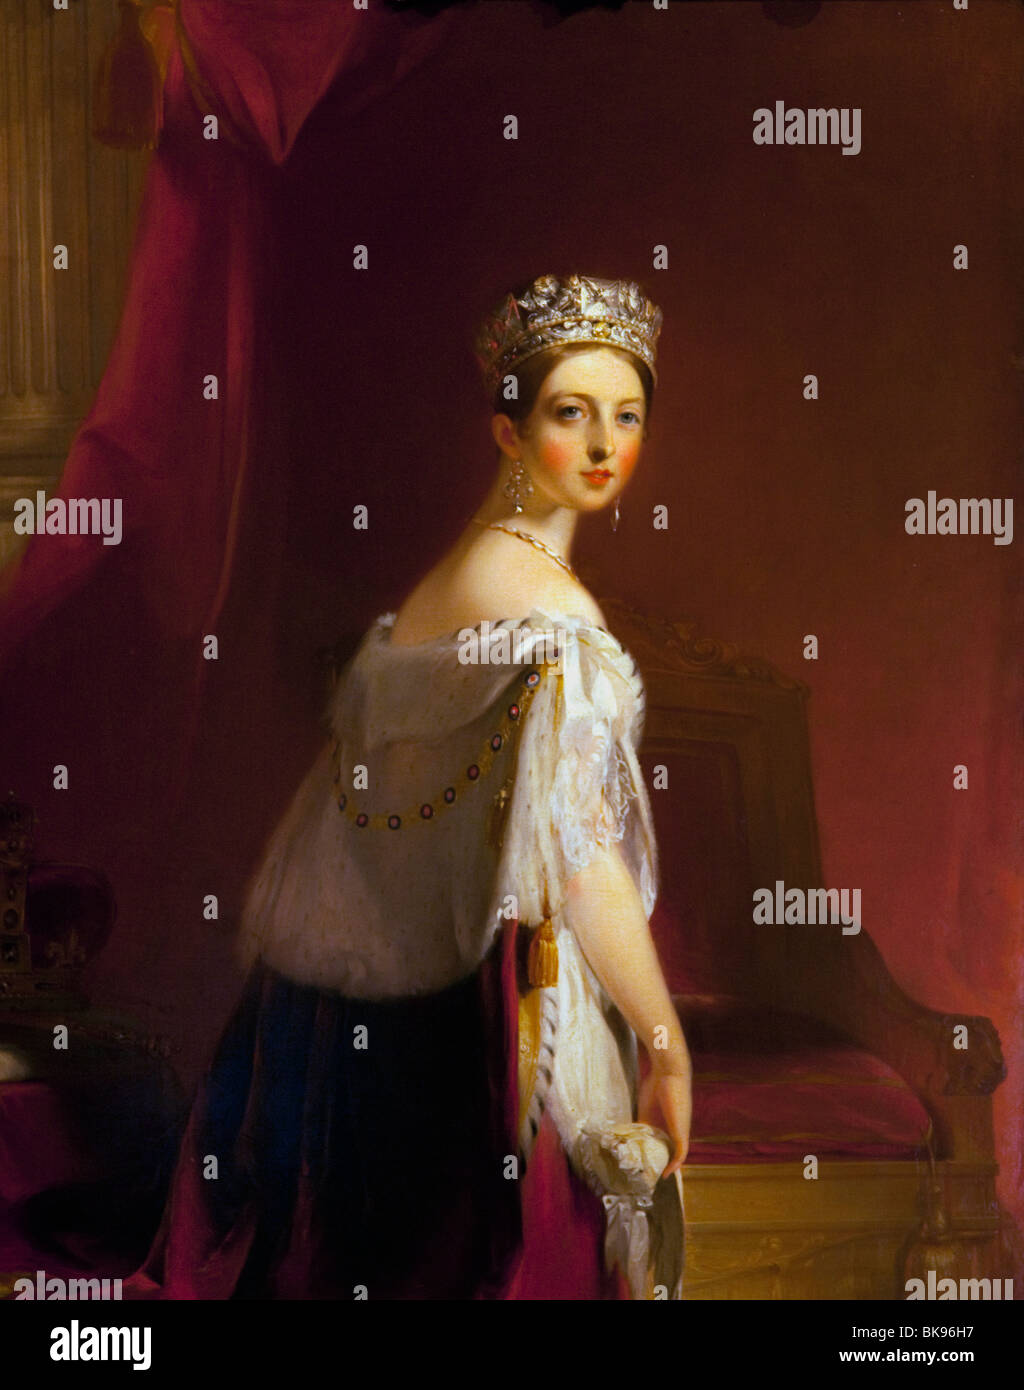 Königin Victoria von Thomas Sully, 1838, Wallace Collection, London, Vereinigtes Königreich Stockfoto